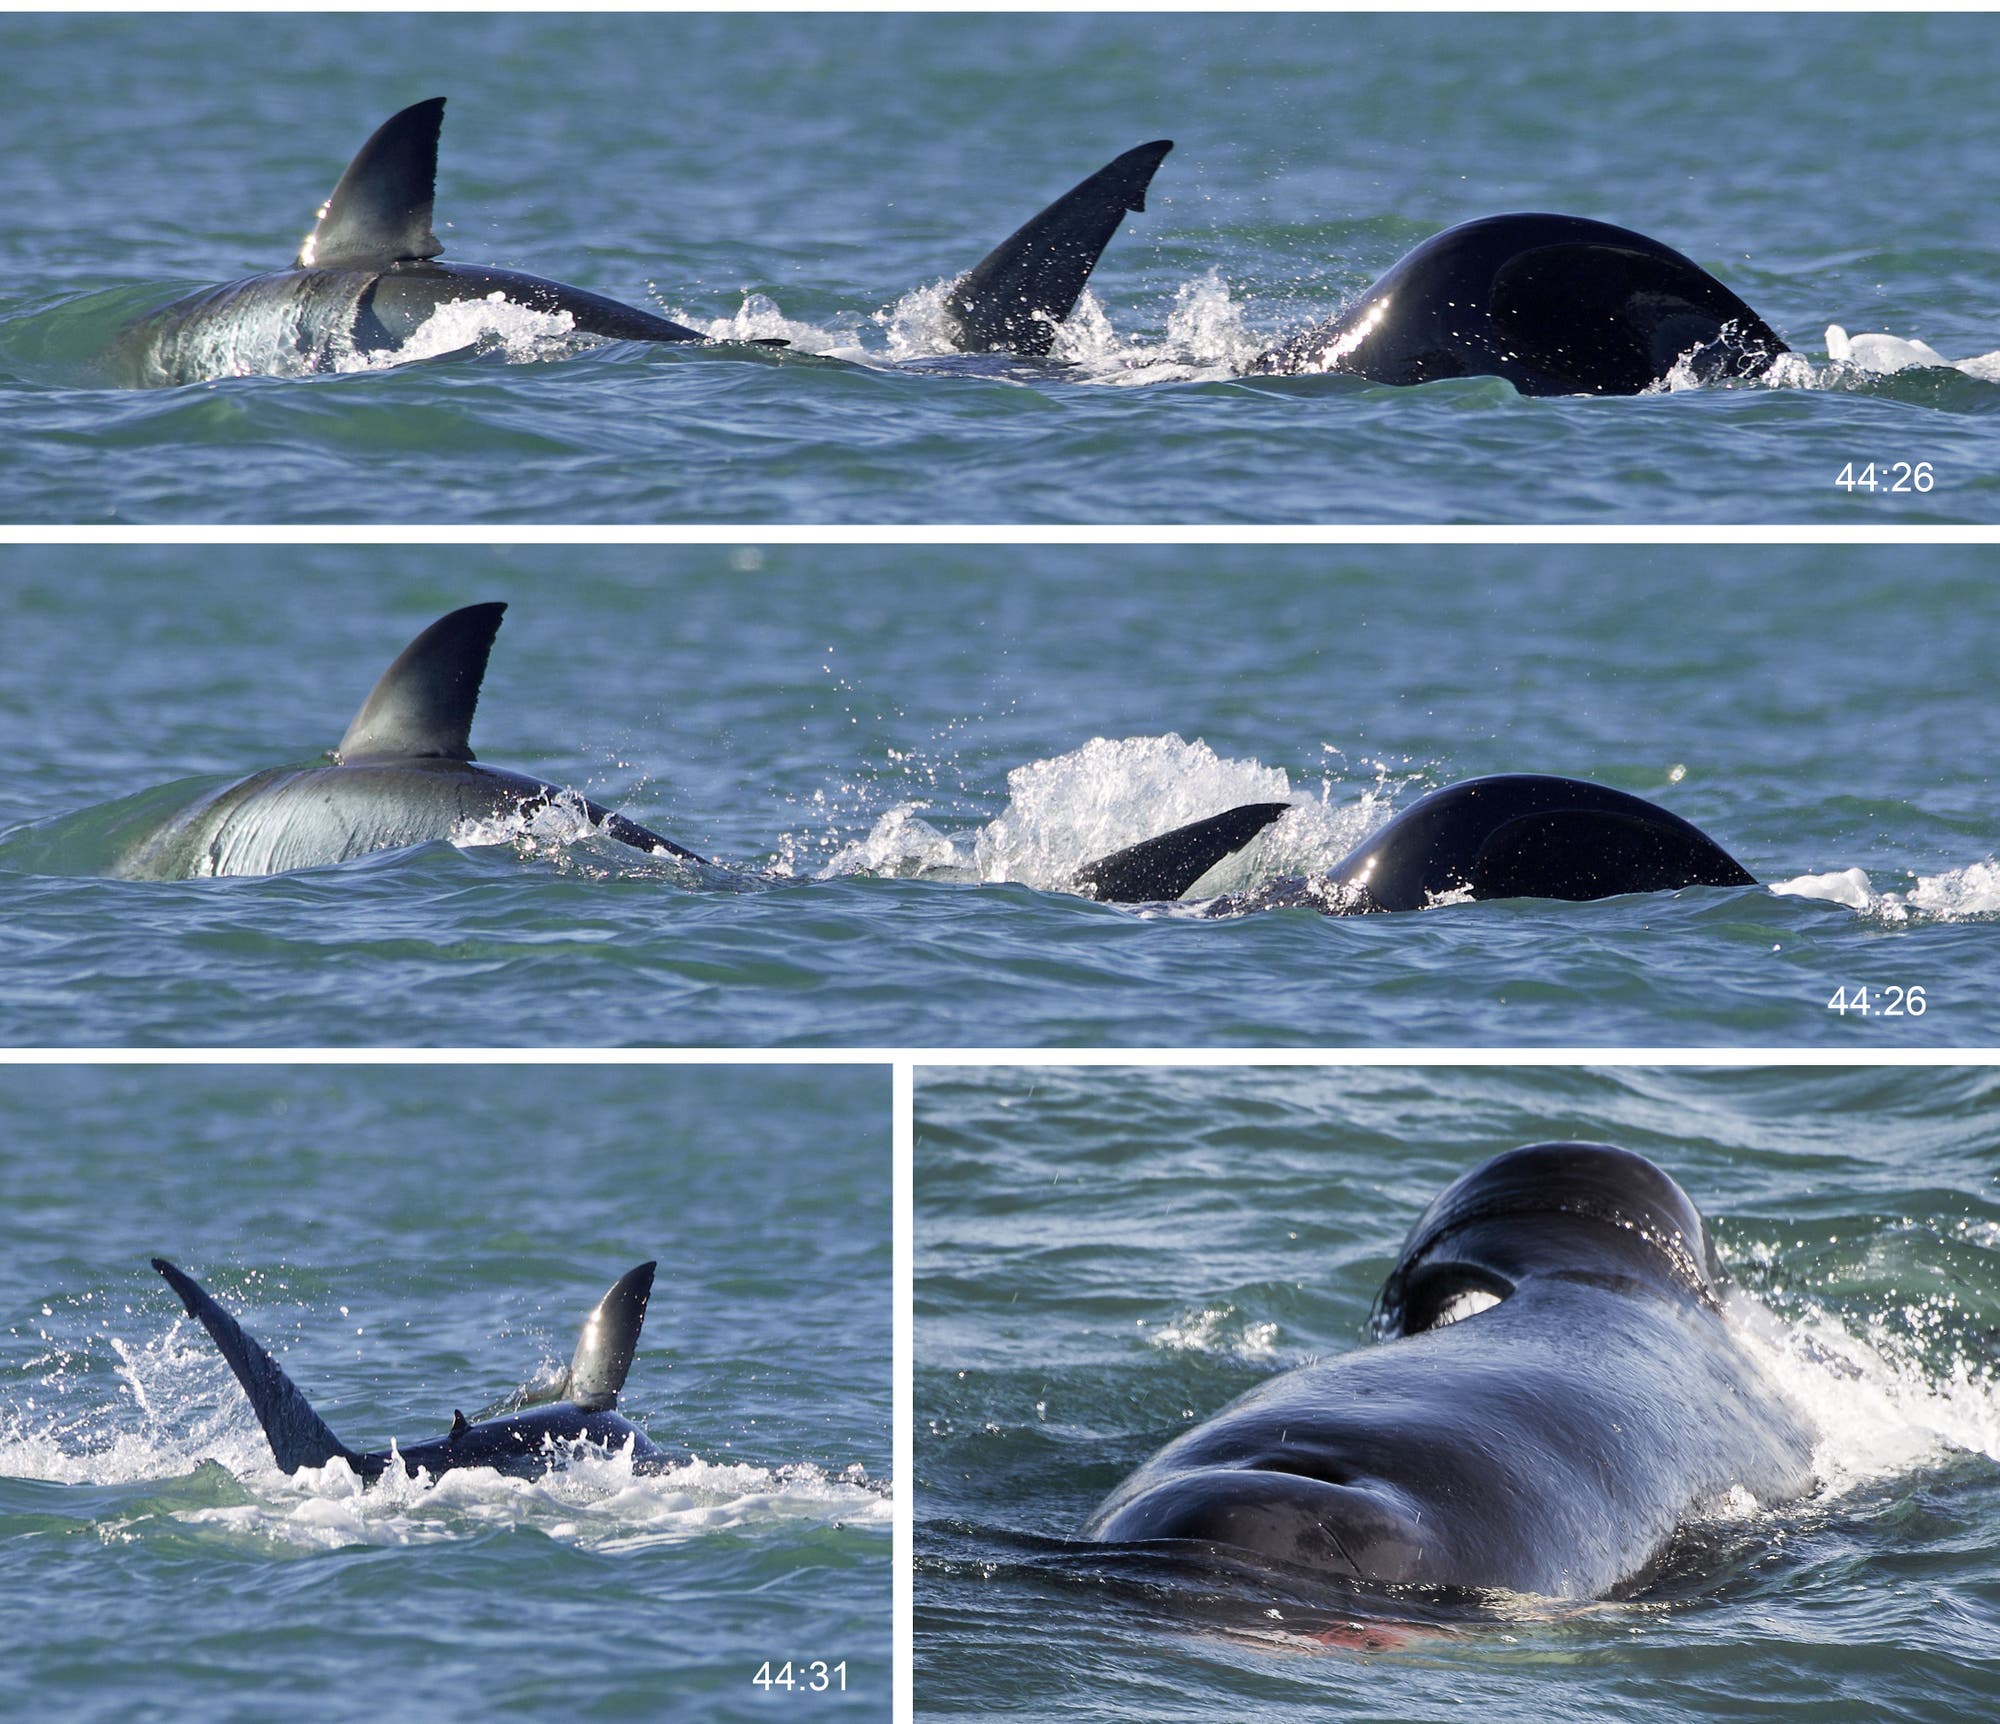 Bilderserie der Attacke eines Schwertwals auf einen Weißen Hai, die aus einem Boot aufgenommen wurde. Man sieht Flossen und Rücken der beiden Tiere. Im letzten Bild erkennt man auch etwas Blut des Hais am Wal.